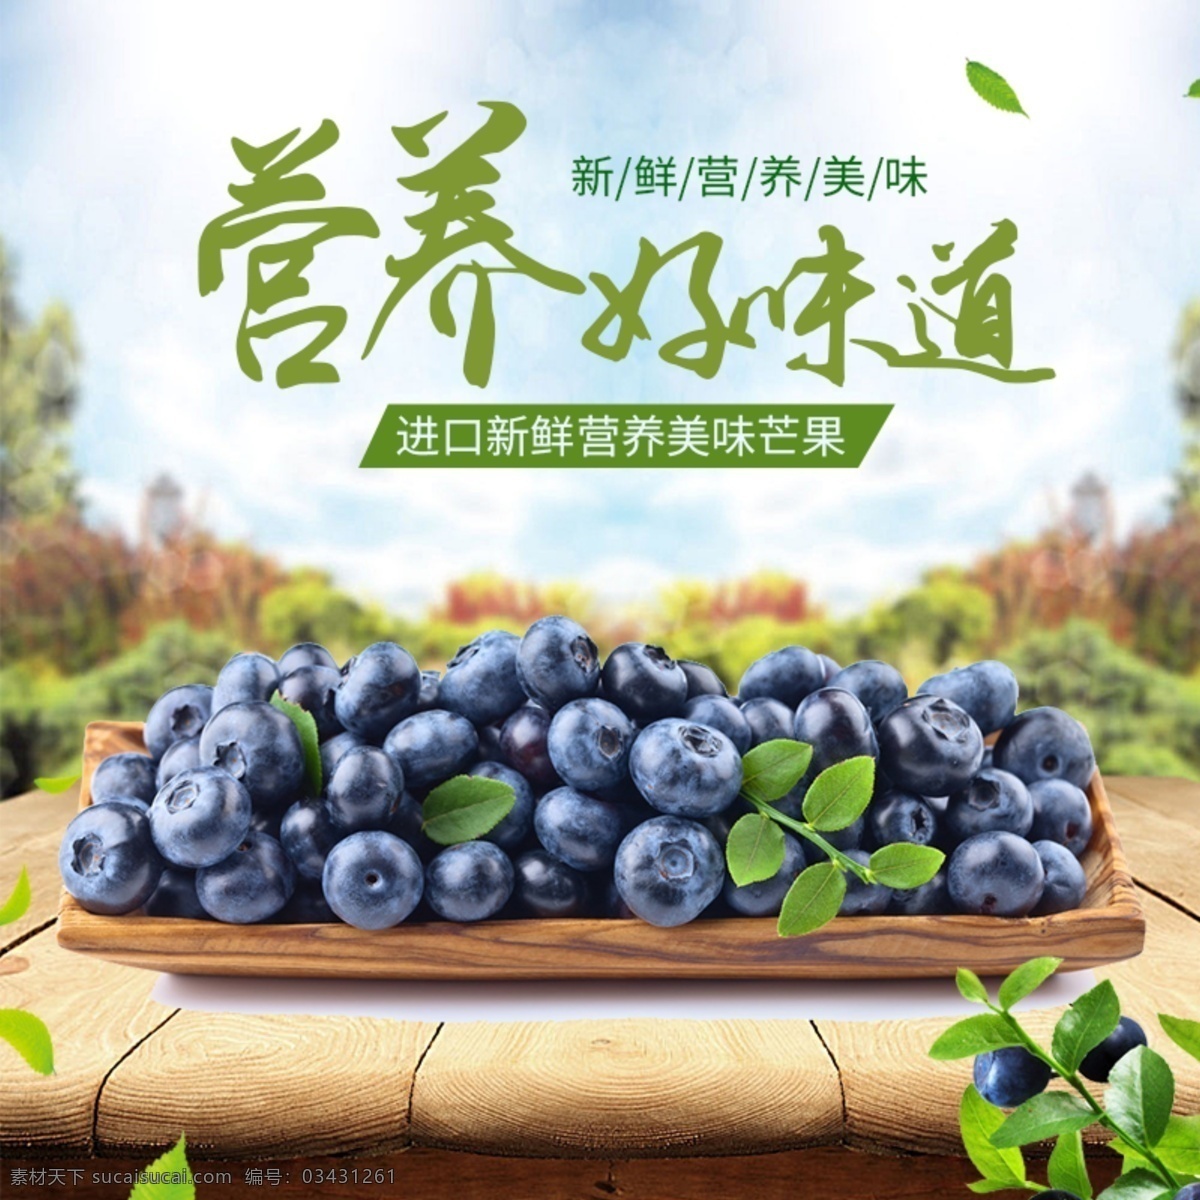 清新 简约 春夏 水果 蓝莓 主 图 直通车 主图 淘宝界面设计